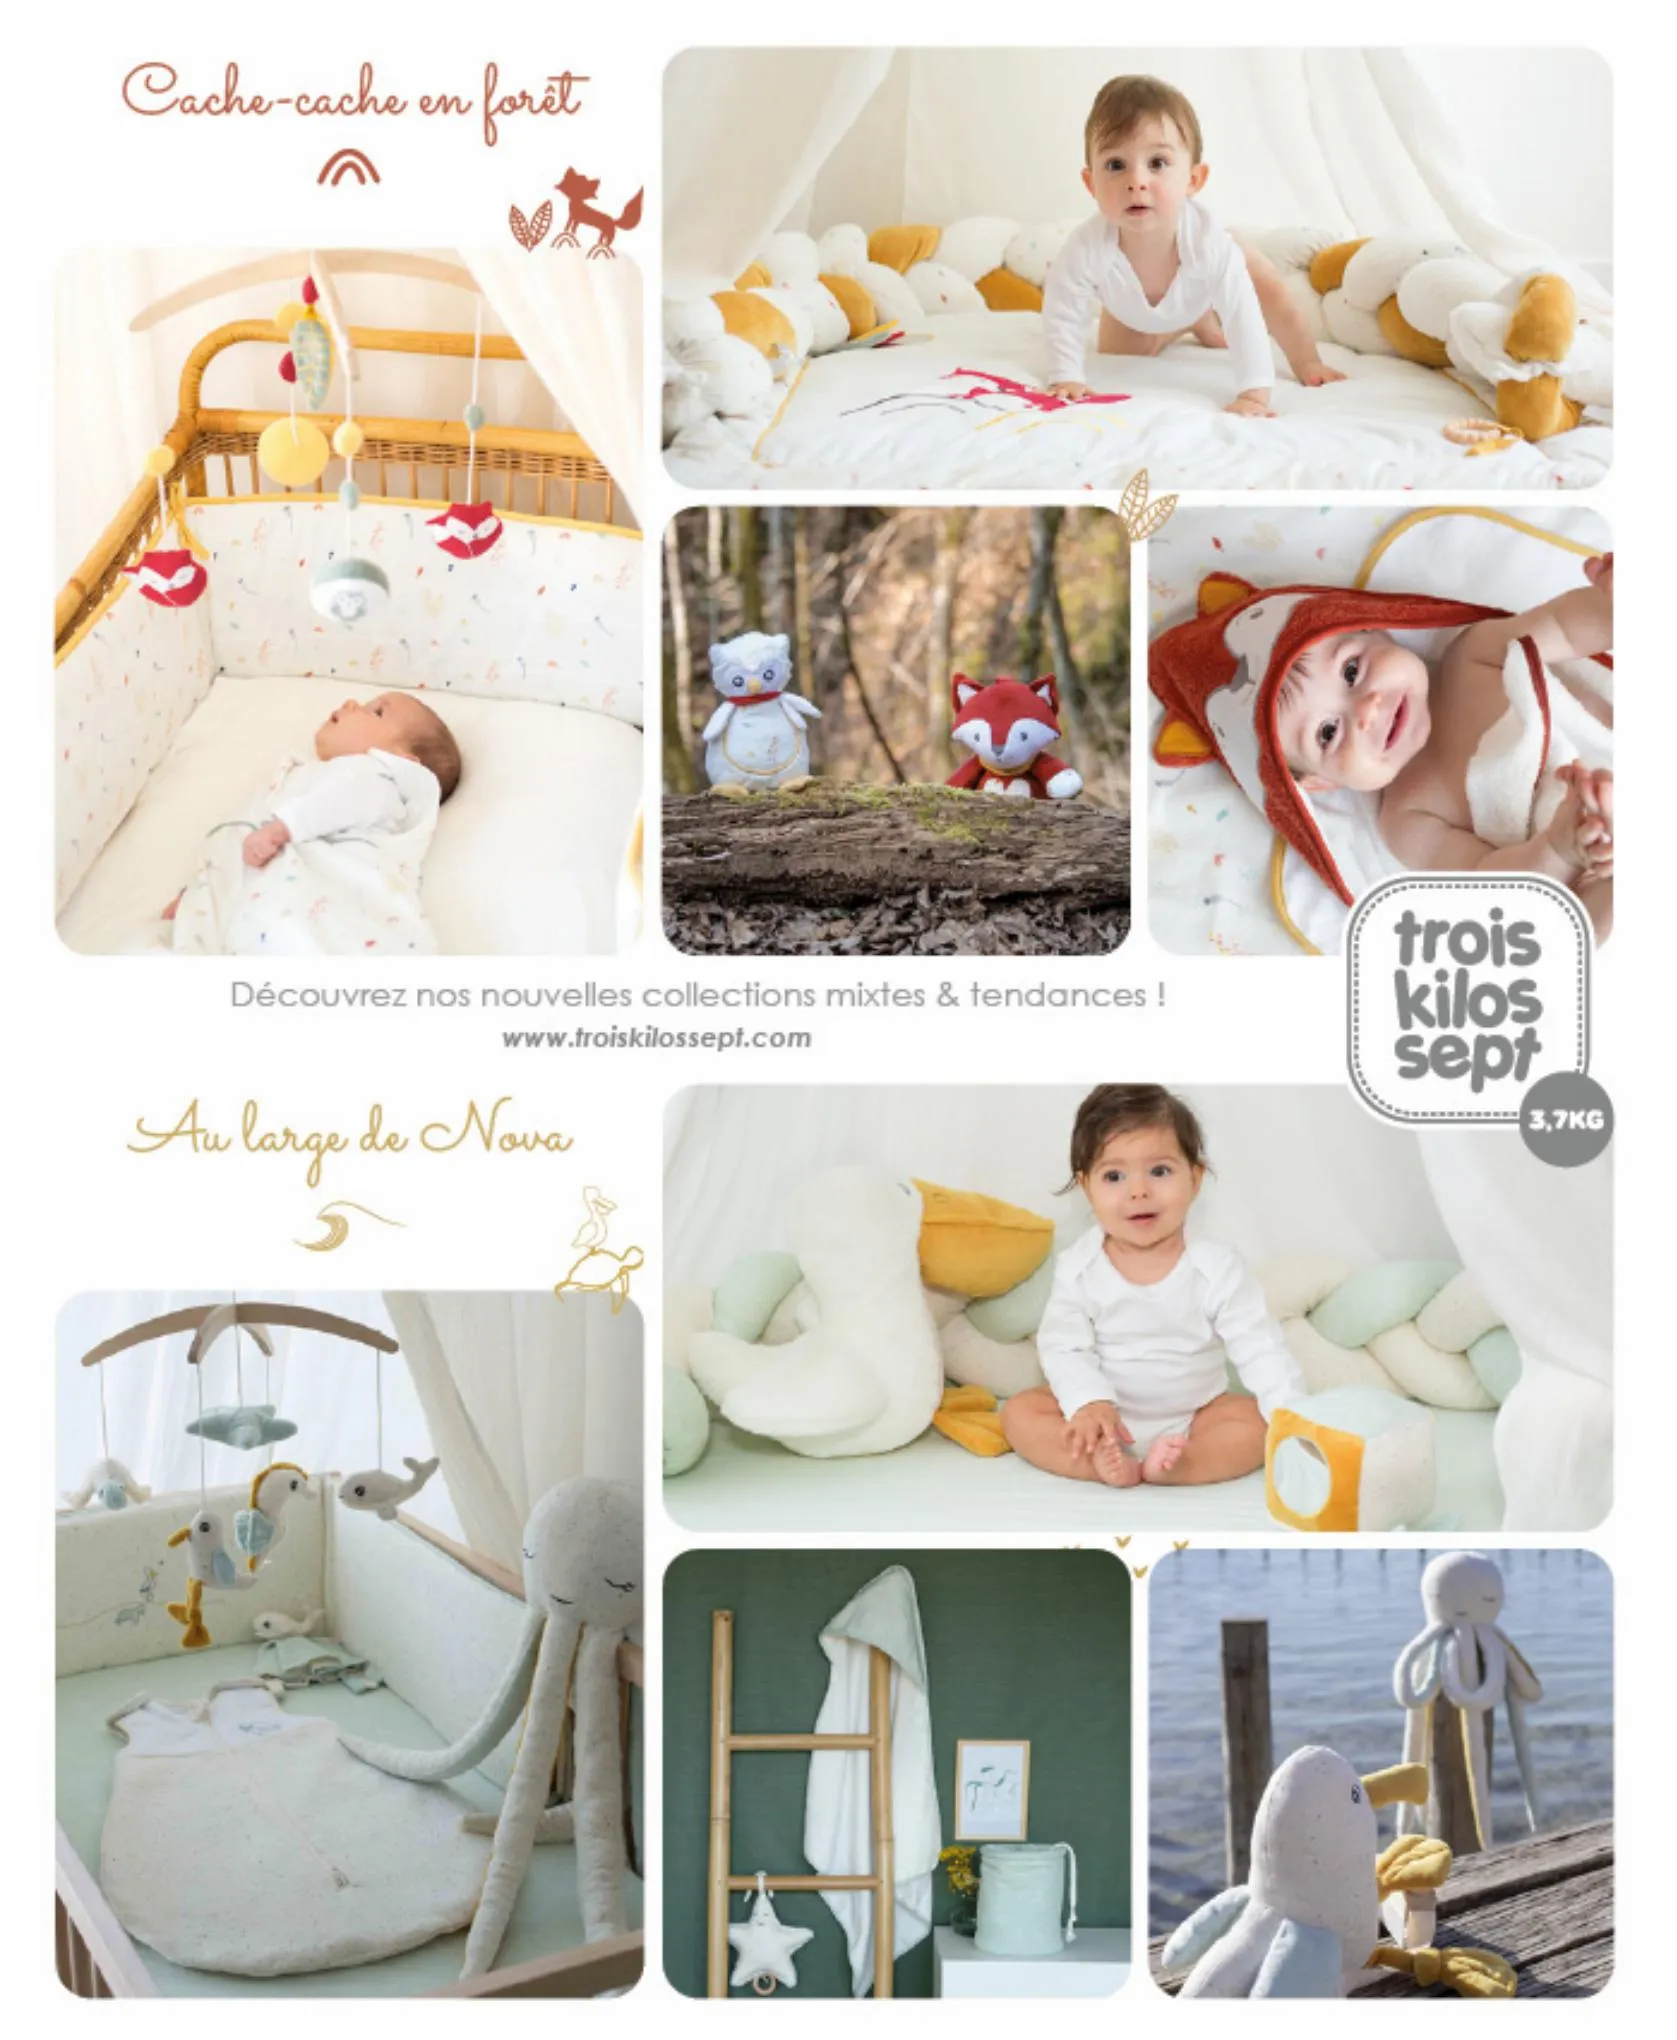 Catalogue Catalogue autour de bébé, page 00081